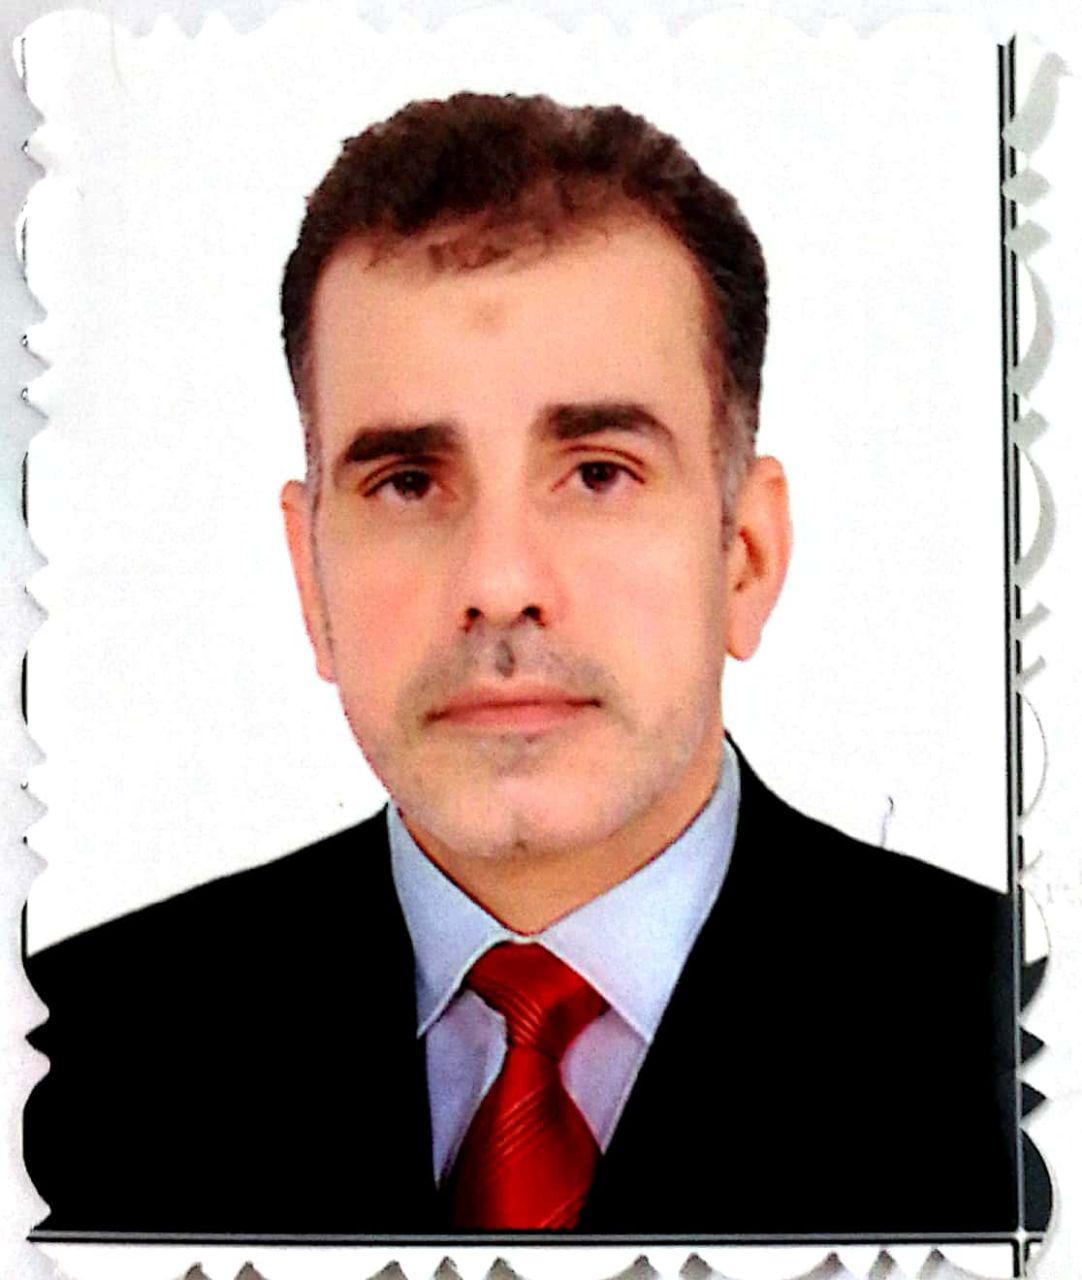 Hussein Badr Ghalib